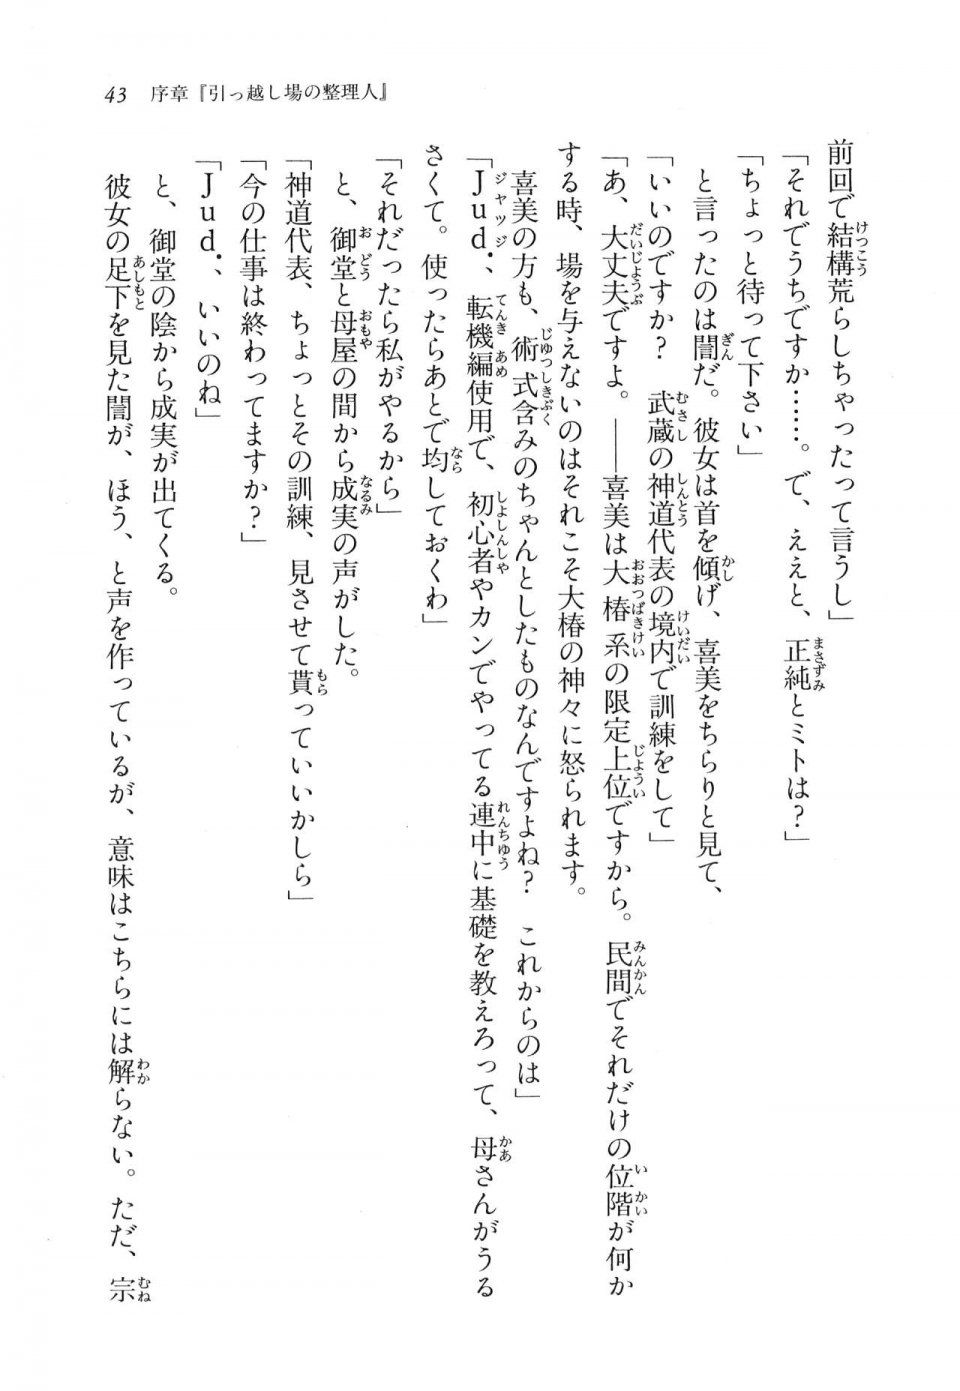 Kyoukai Senjou no Horizon LN Vol 11(5A) - Photo #44